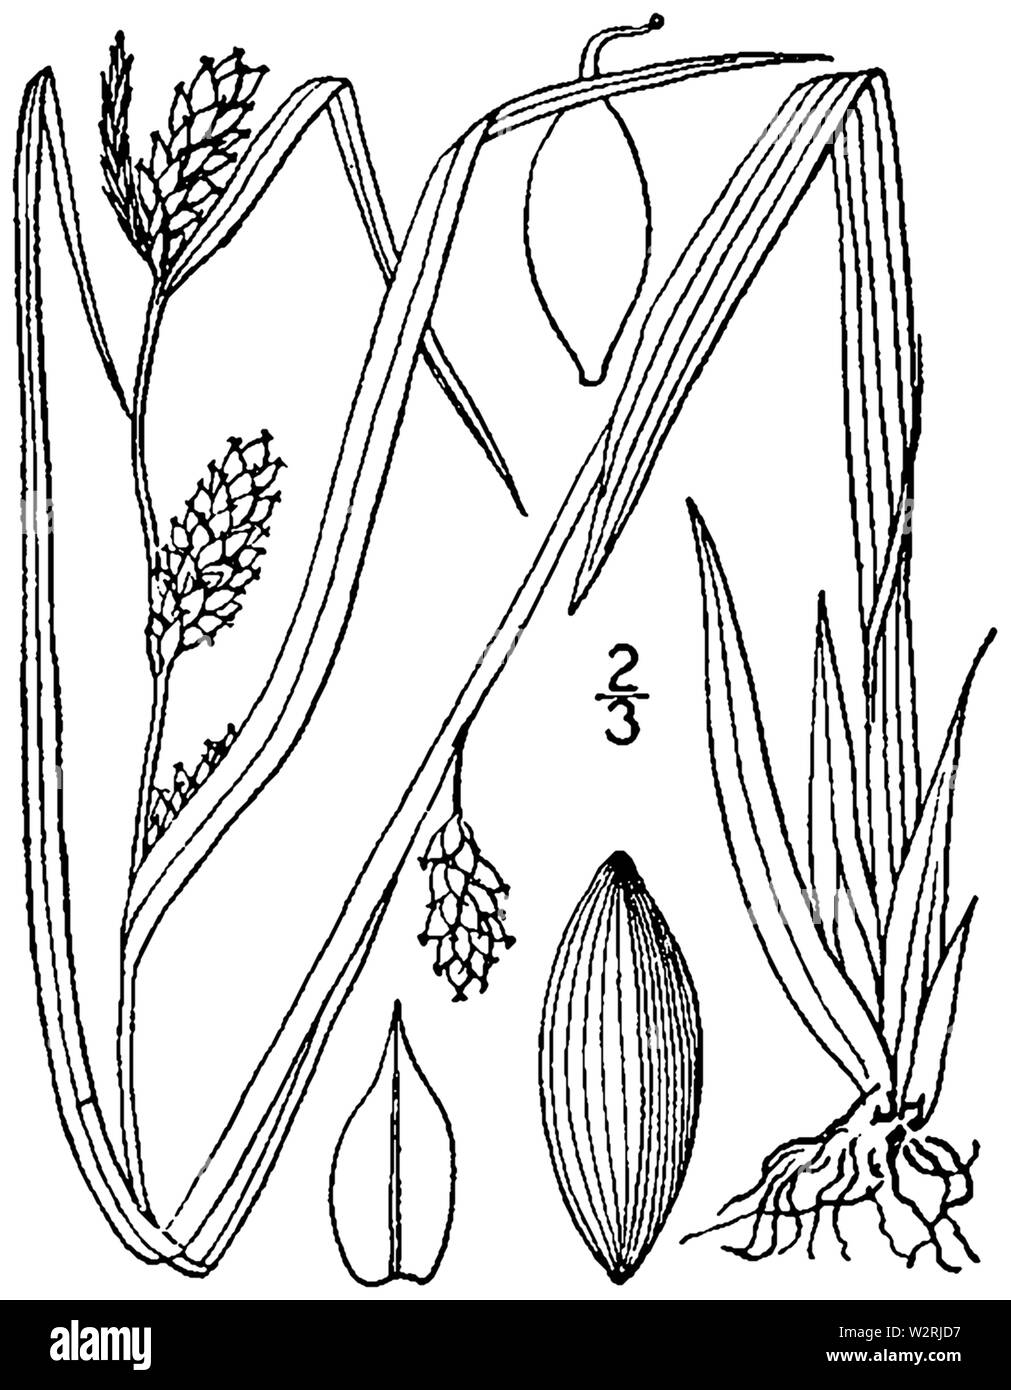 Carex glaucodea drawing 1 Stock Photo